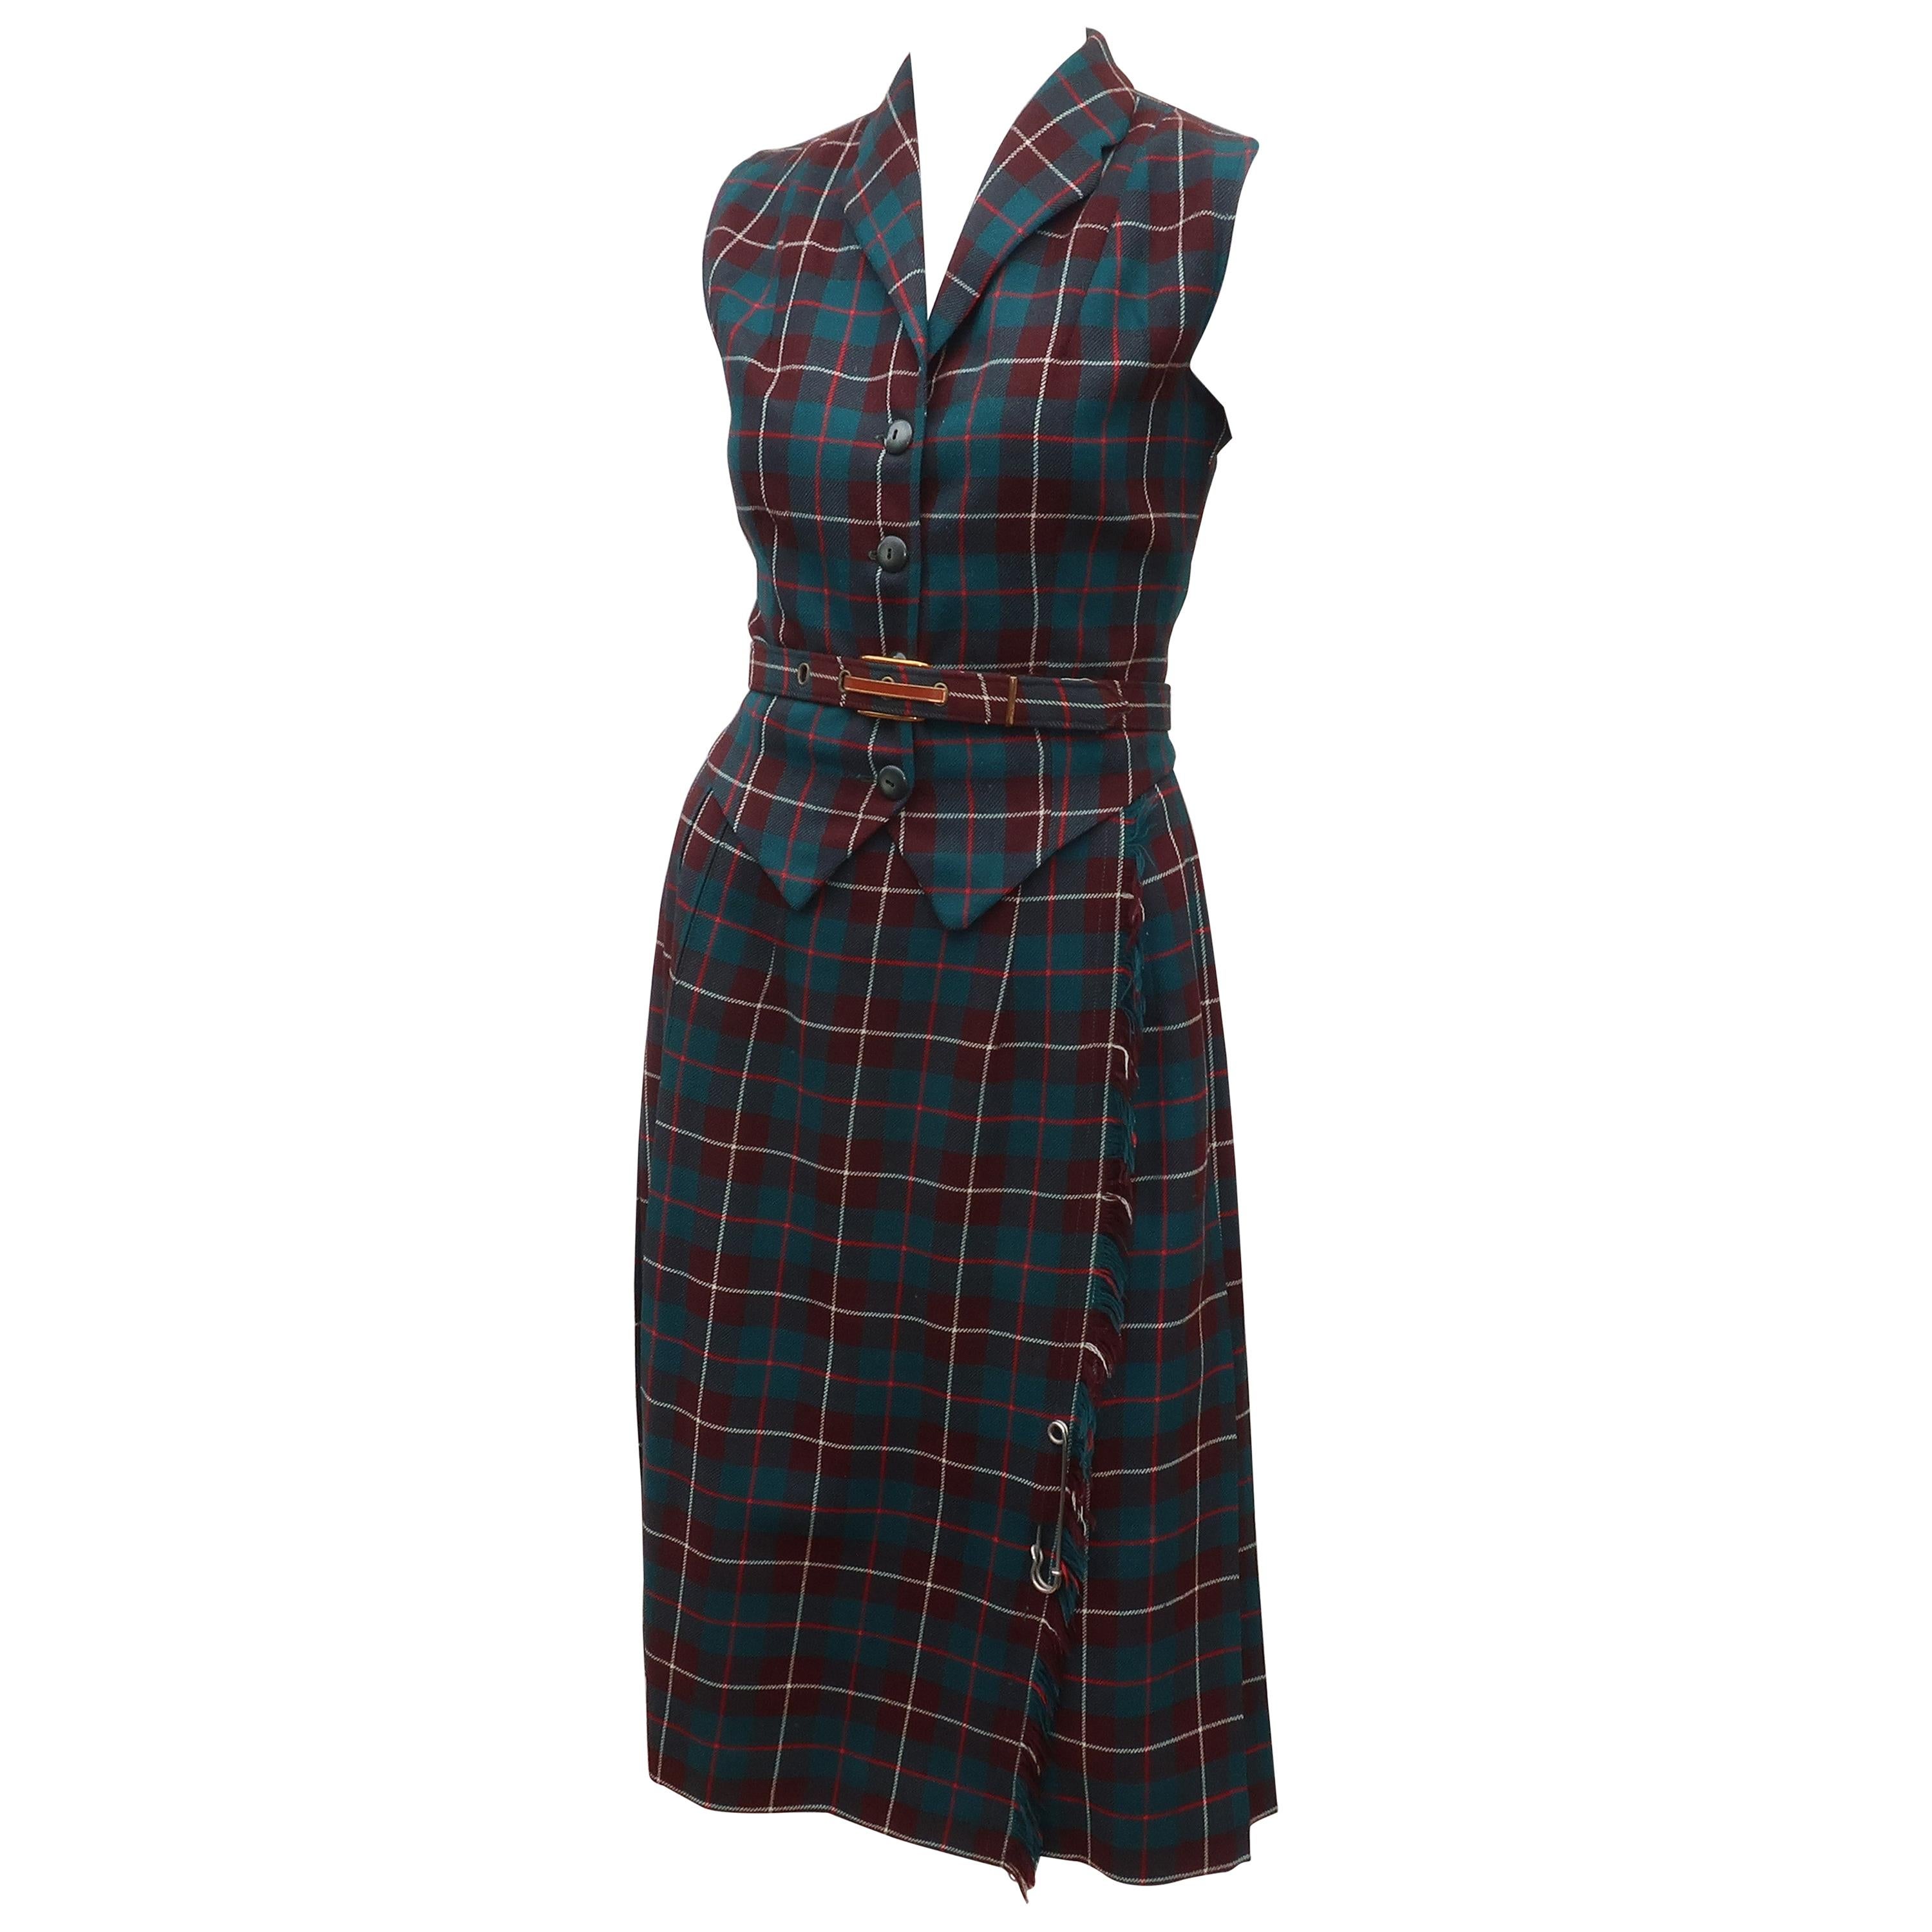 Clans of Scotland Wool Plaid Vest & Kilt Dress, 1950's